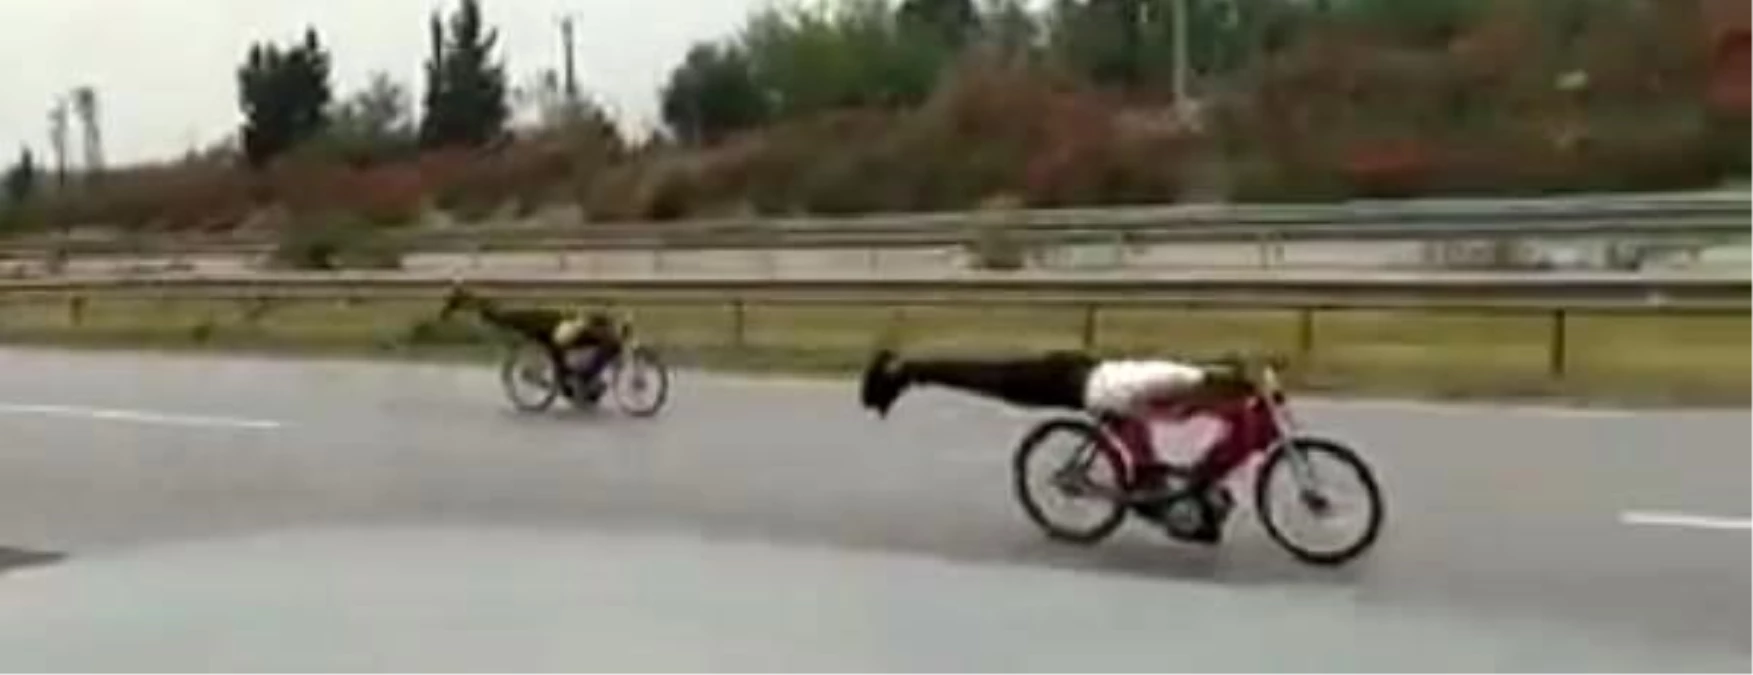 Son dakika haber | Motosikletlerin üzerine yatarak yarıştılar